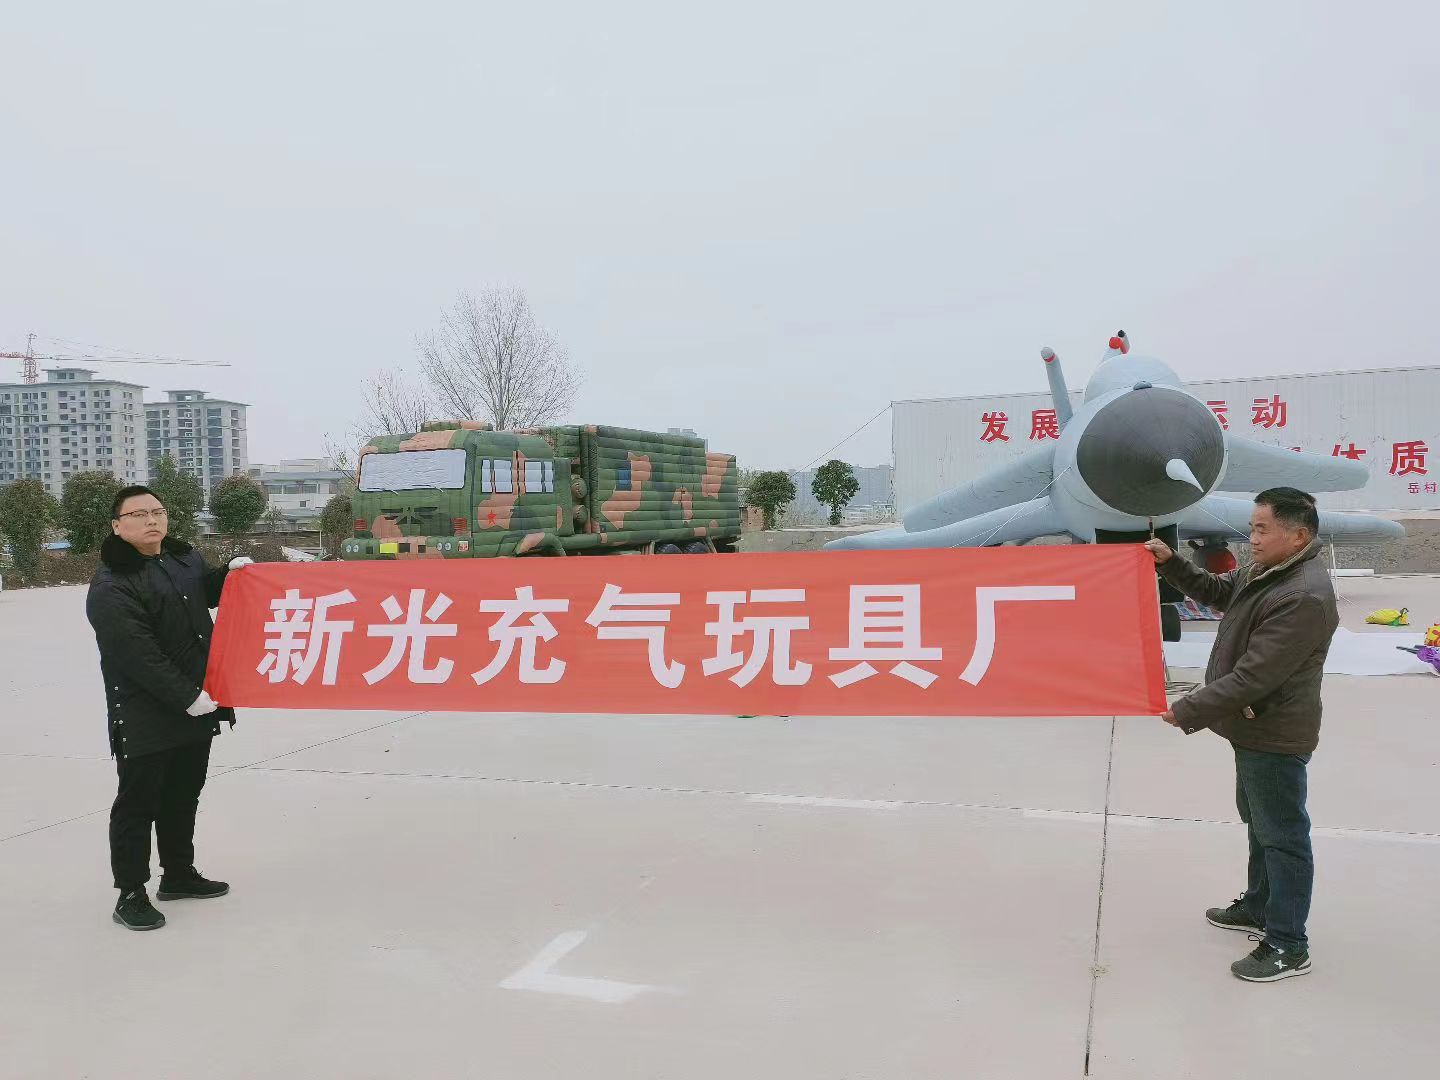 北京制造海上军模假目标的工厂